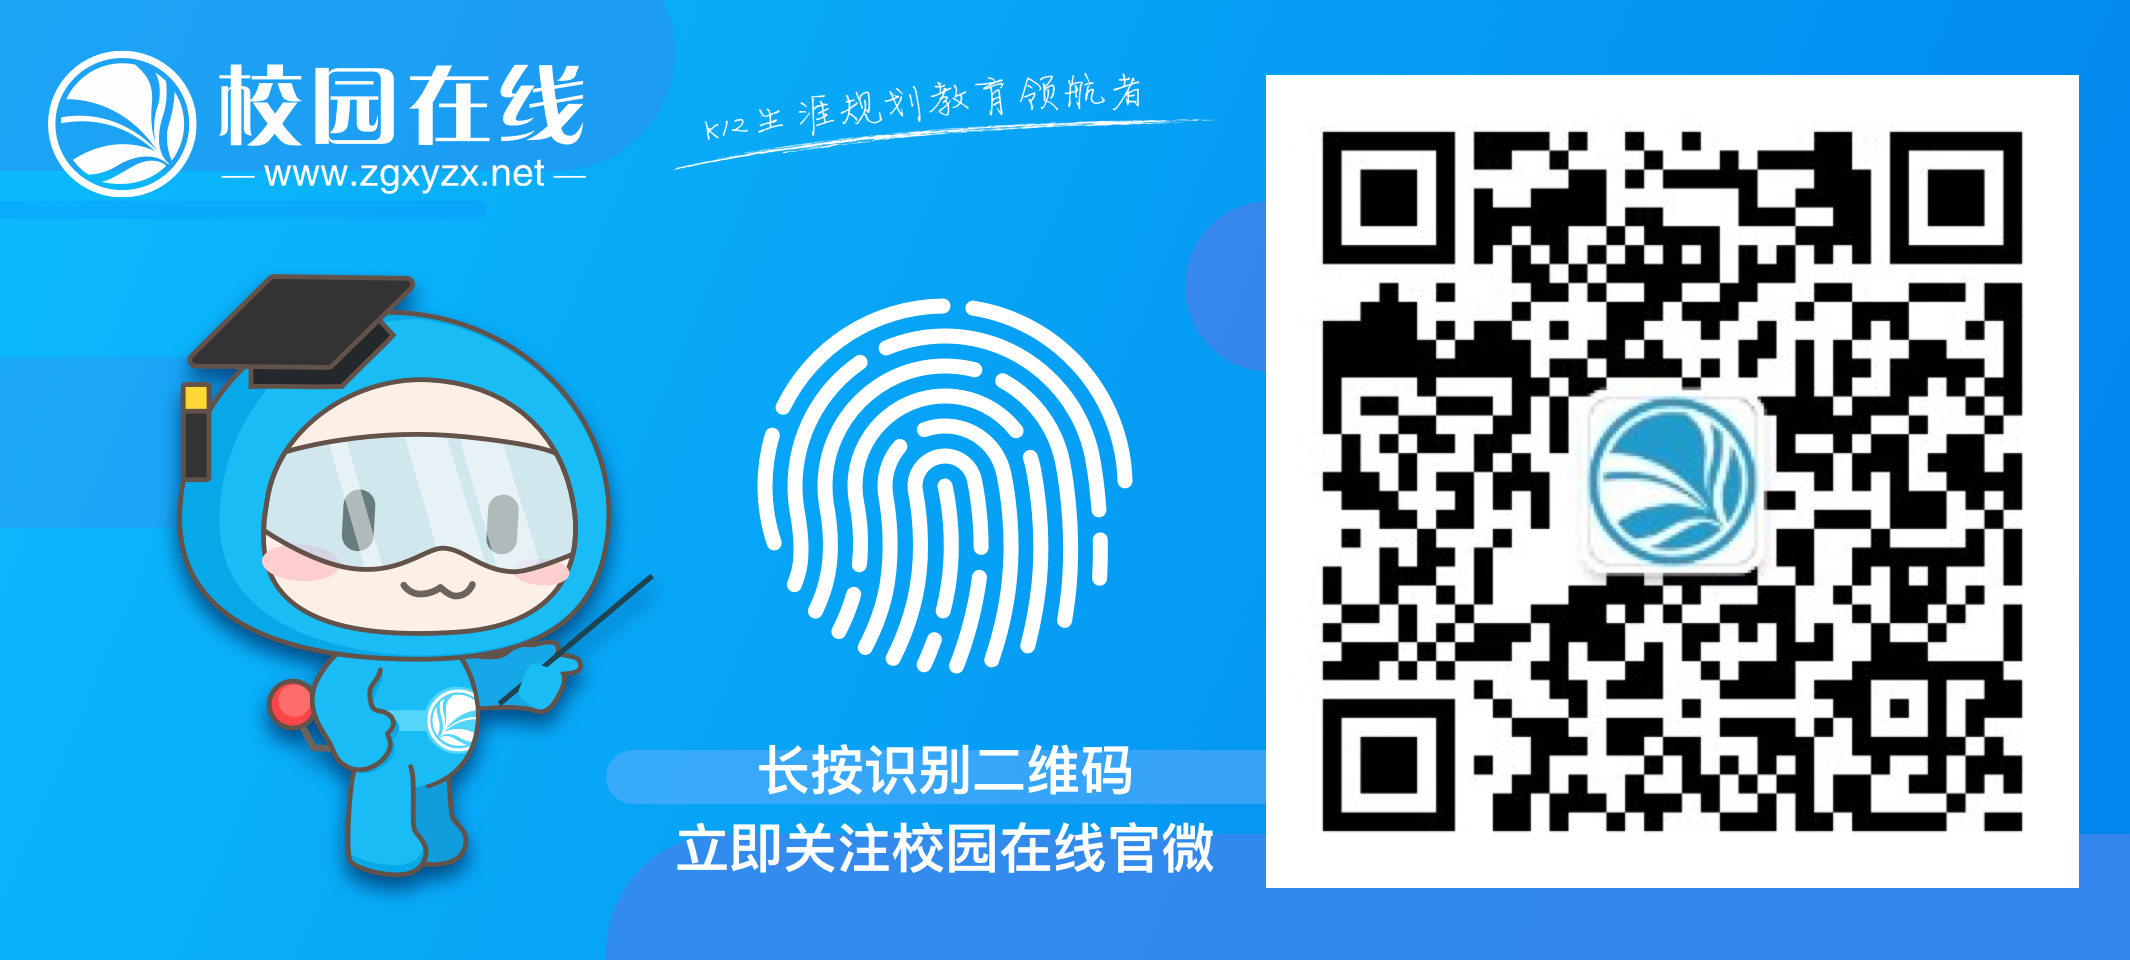 校园在线与深圳实验学校正式签署战略合作协议插图3